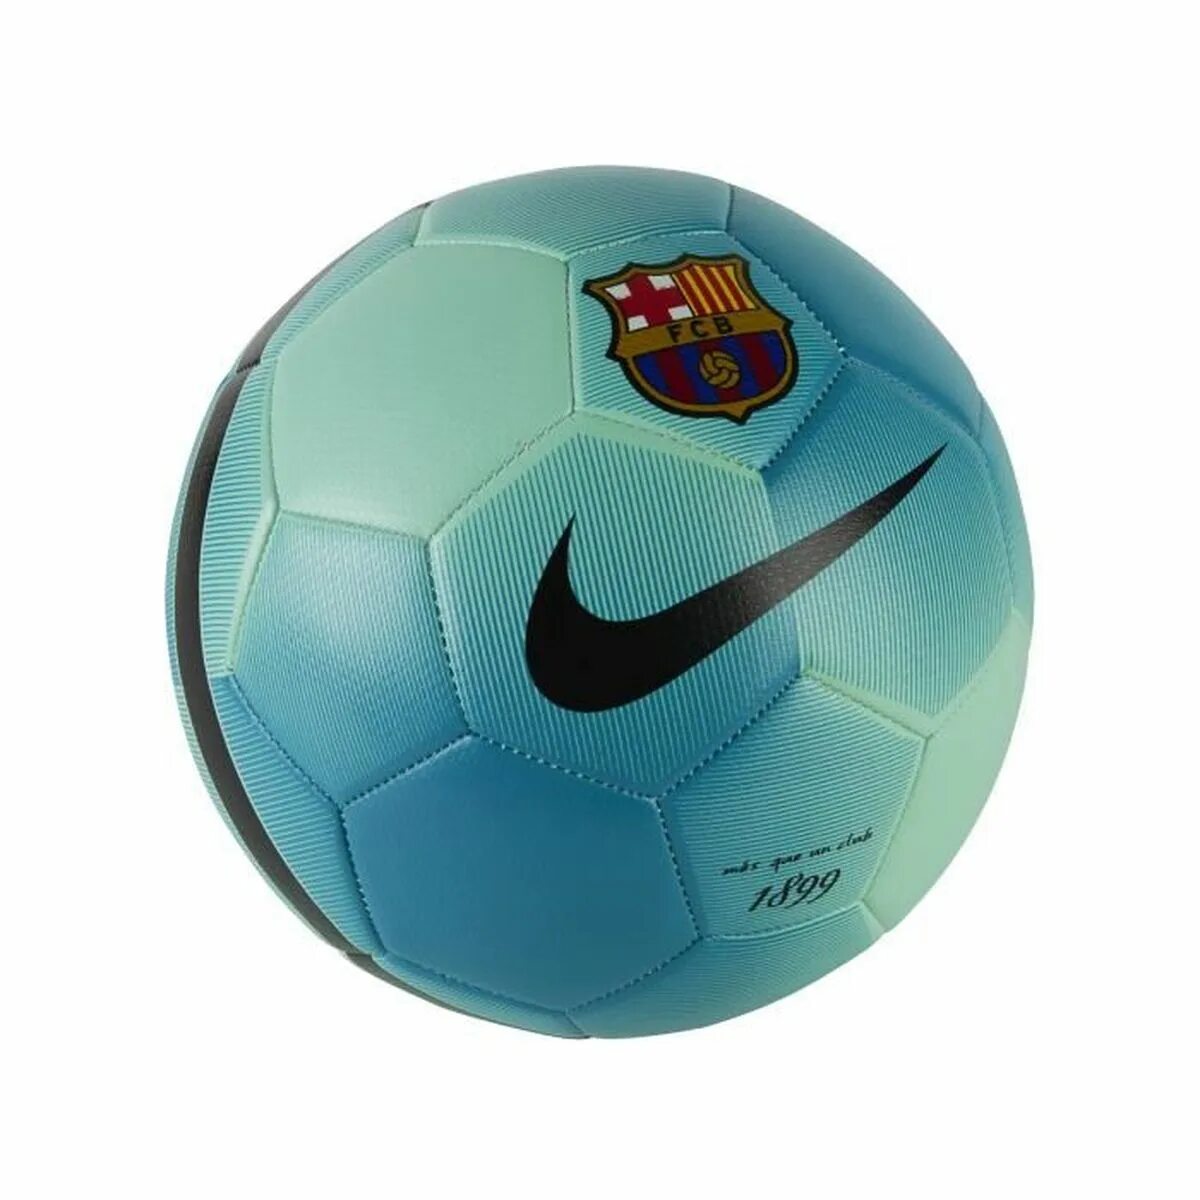 Купить мяч в спортмастере. Мяч футбольный FCB Prestige. Мяч Nike 112012. Футбольный мяч Nike FCB. Футбольный мяч найк Барселона.